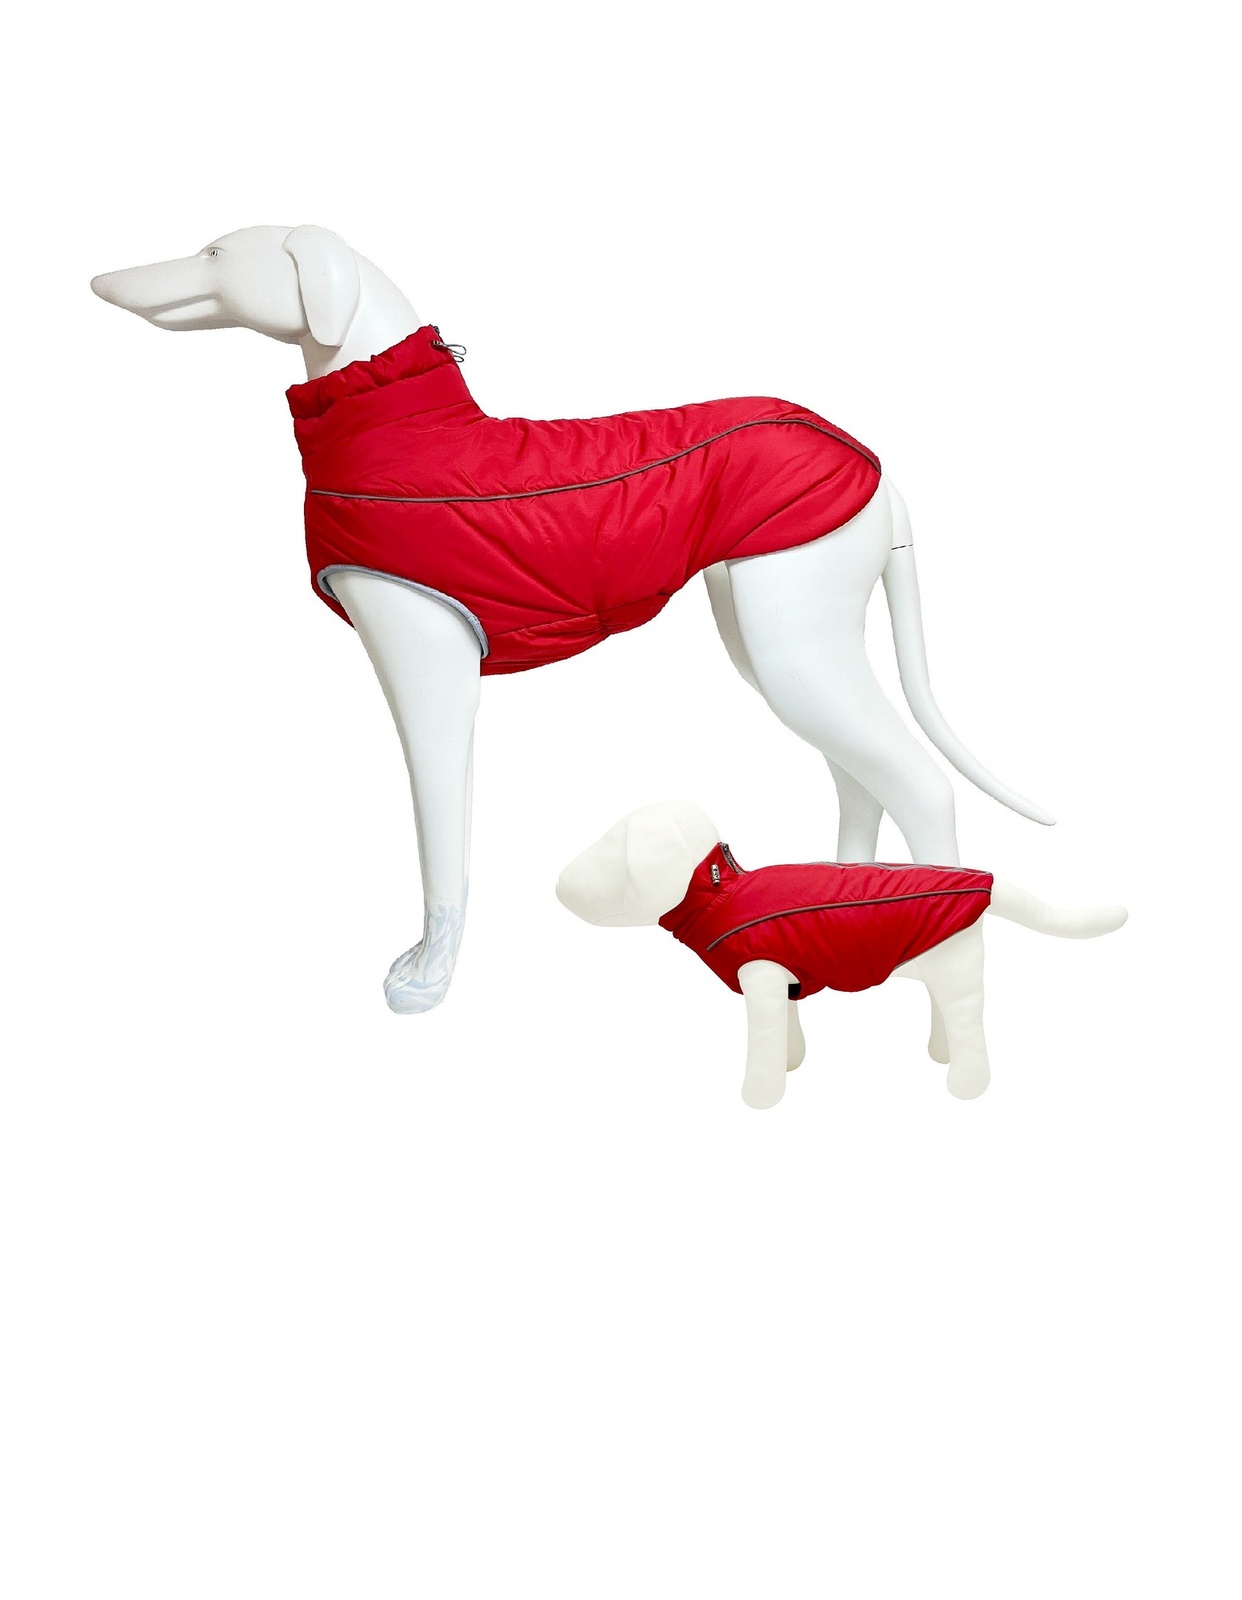 OSSO жилет зимний для собак Аляска (красный) (32 см) OSSO жилет зимний для собак Аляска (красный) (32 см) - фото 1